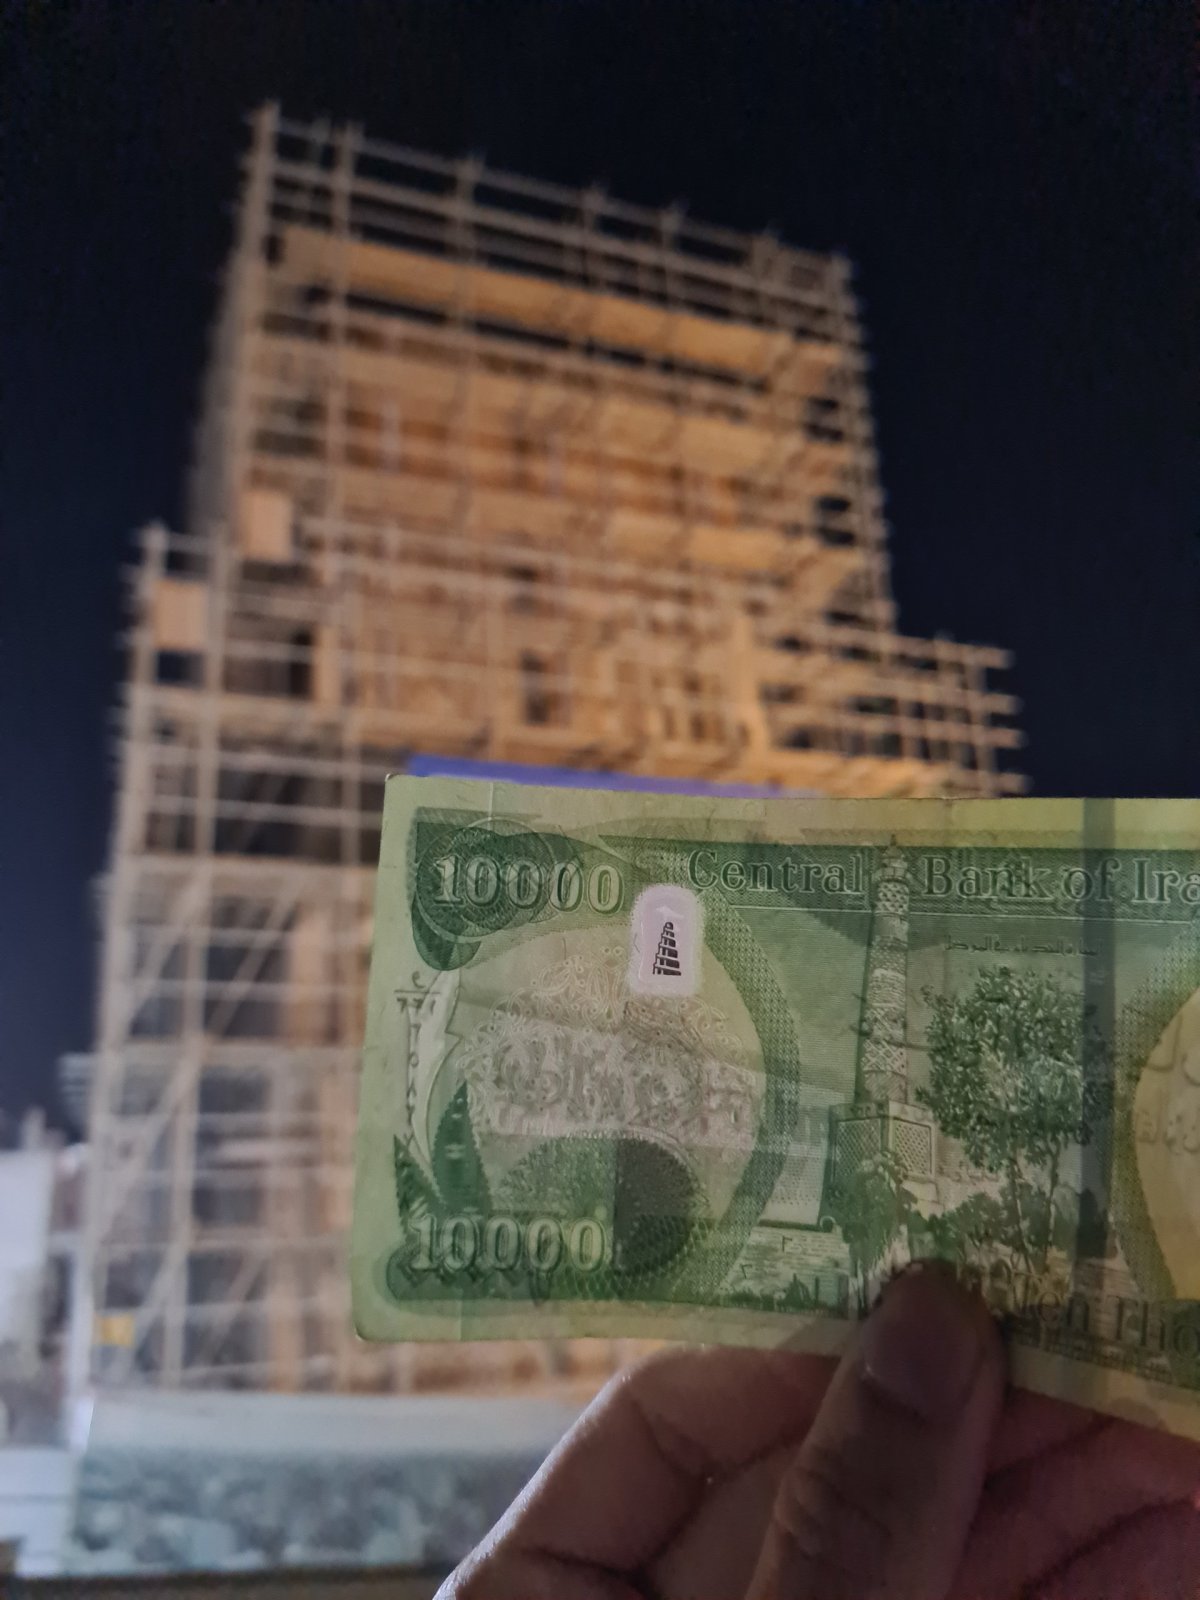 Probíhající rekonstrukce slavného minaretu, které je na desetitisícové bankovce.